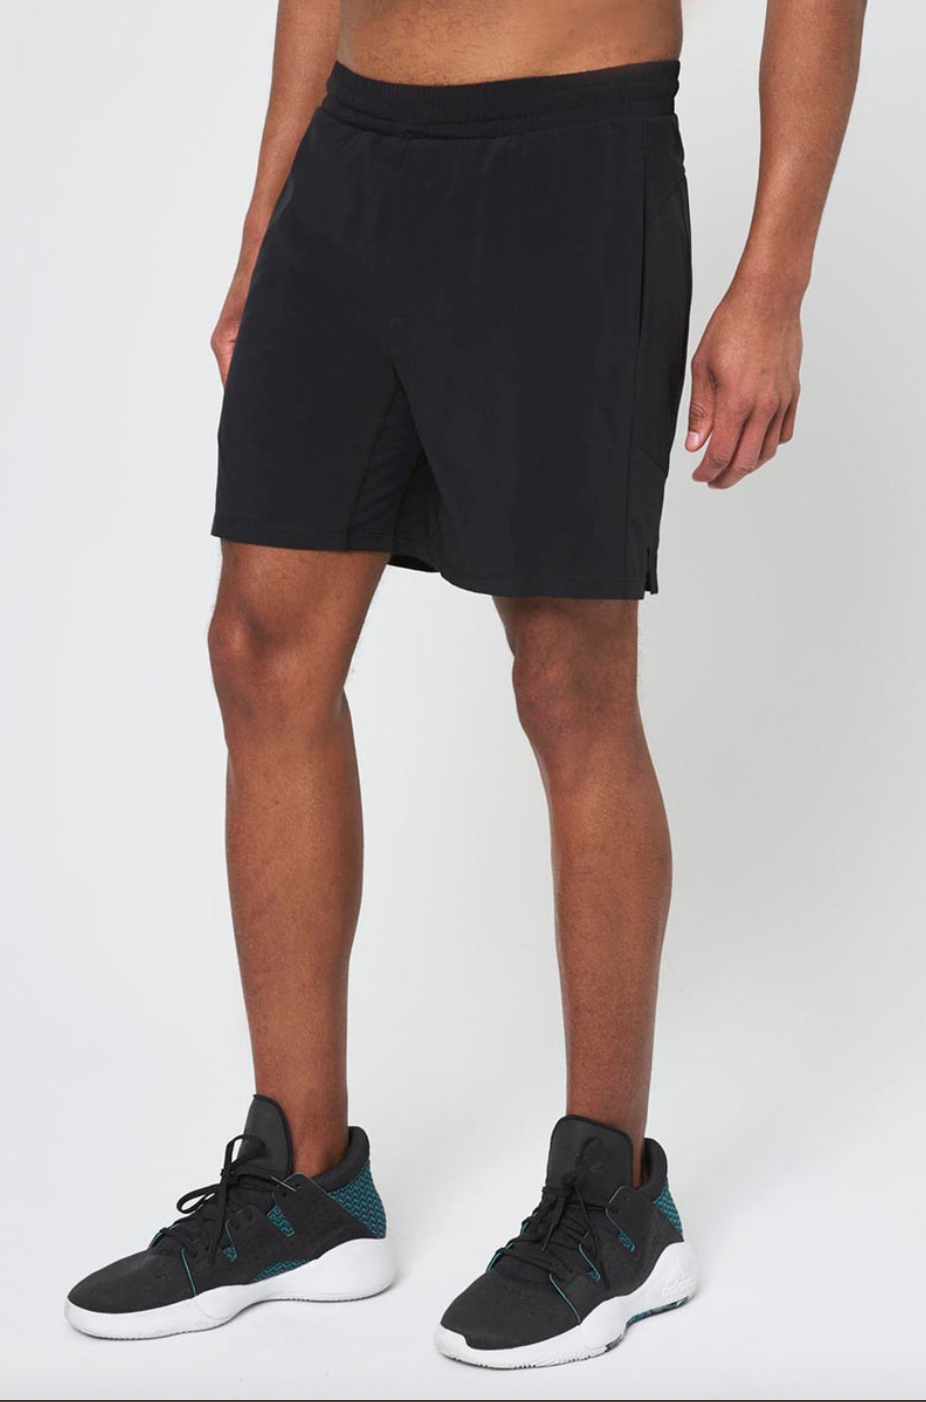 Nike Forward Shorts Men's Shorts